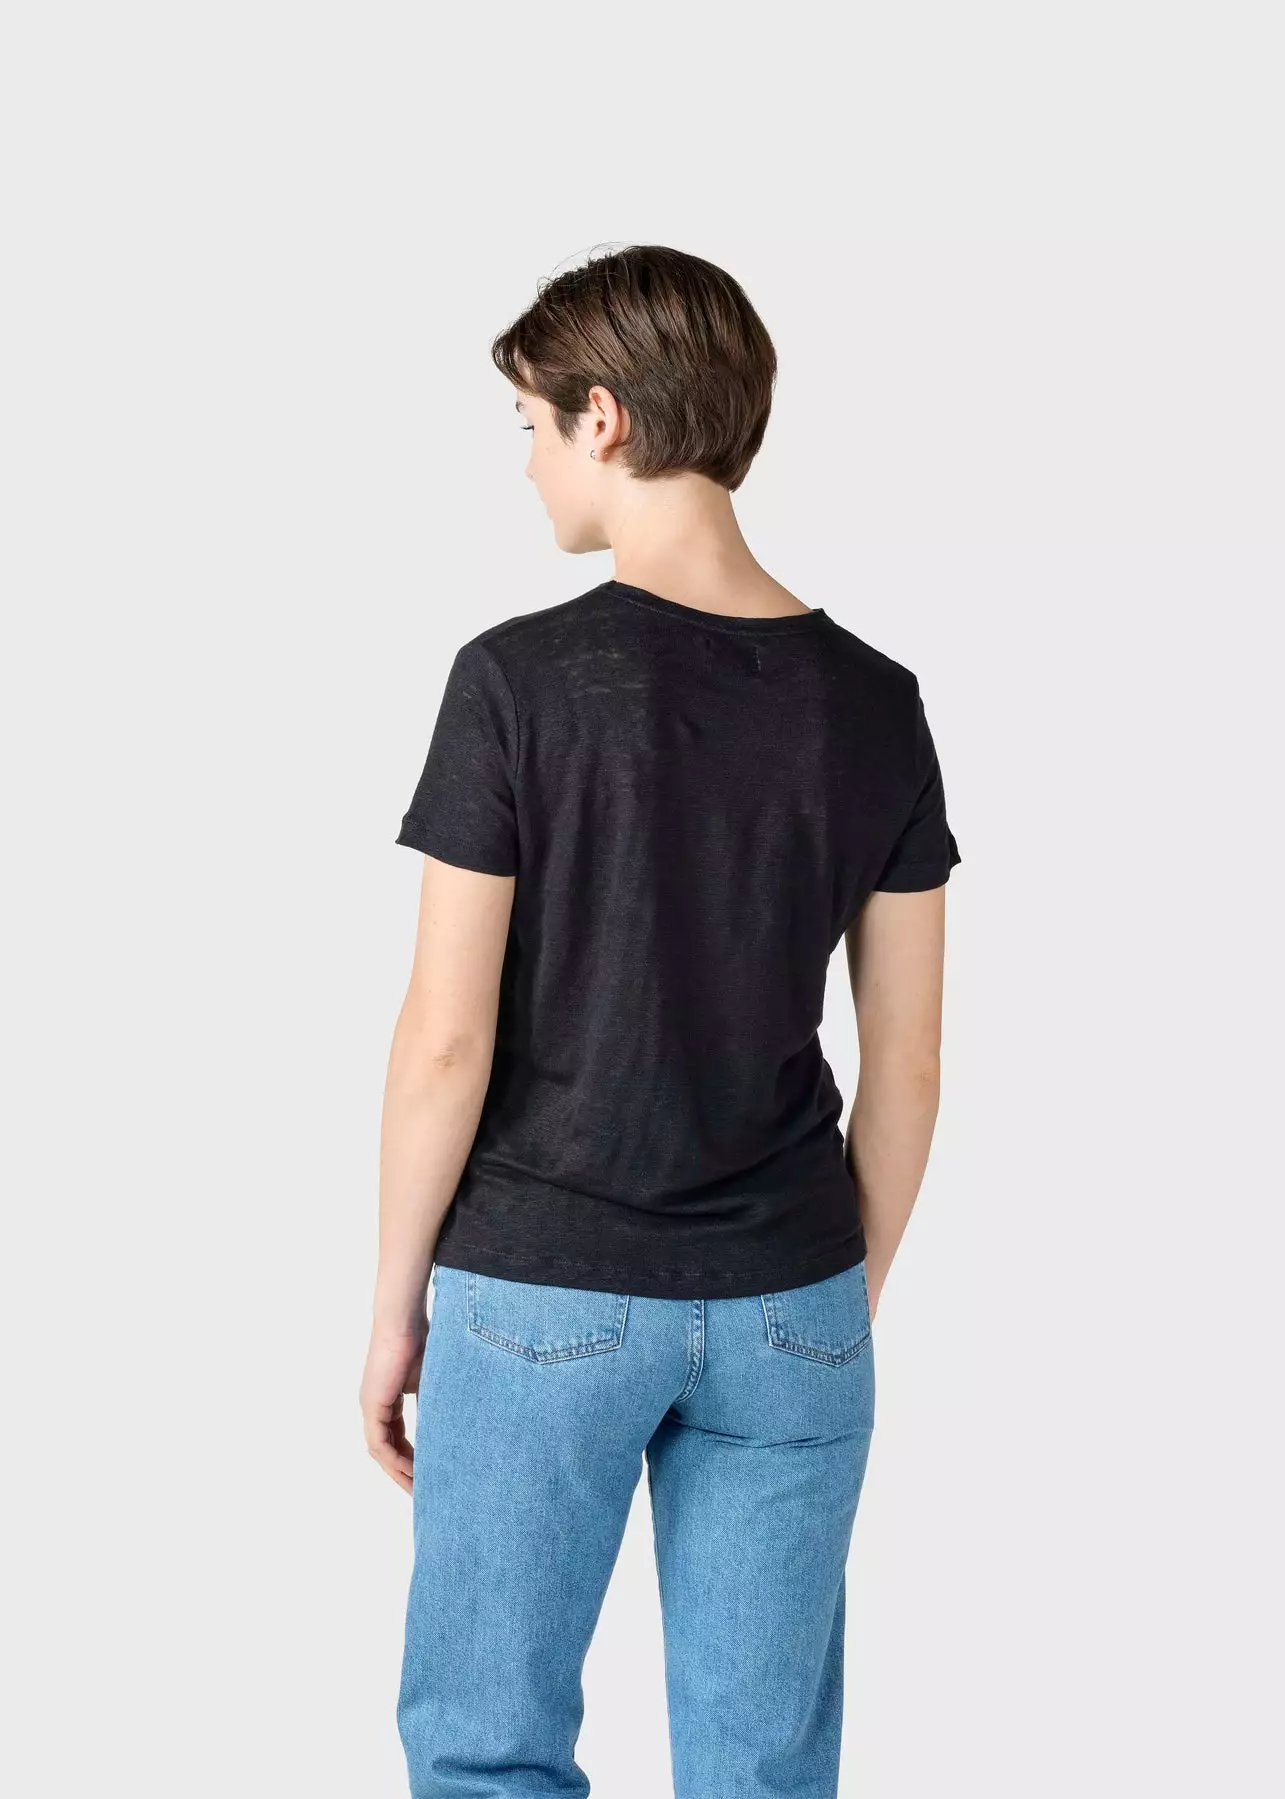 Leinen T-Shirt Modell: Rikke